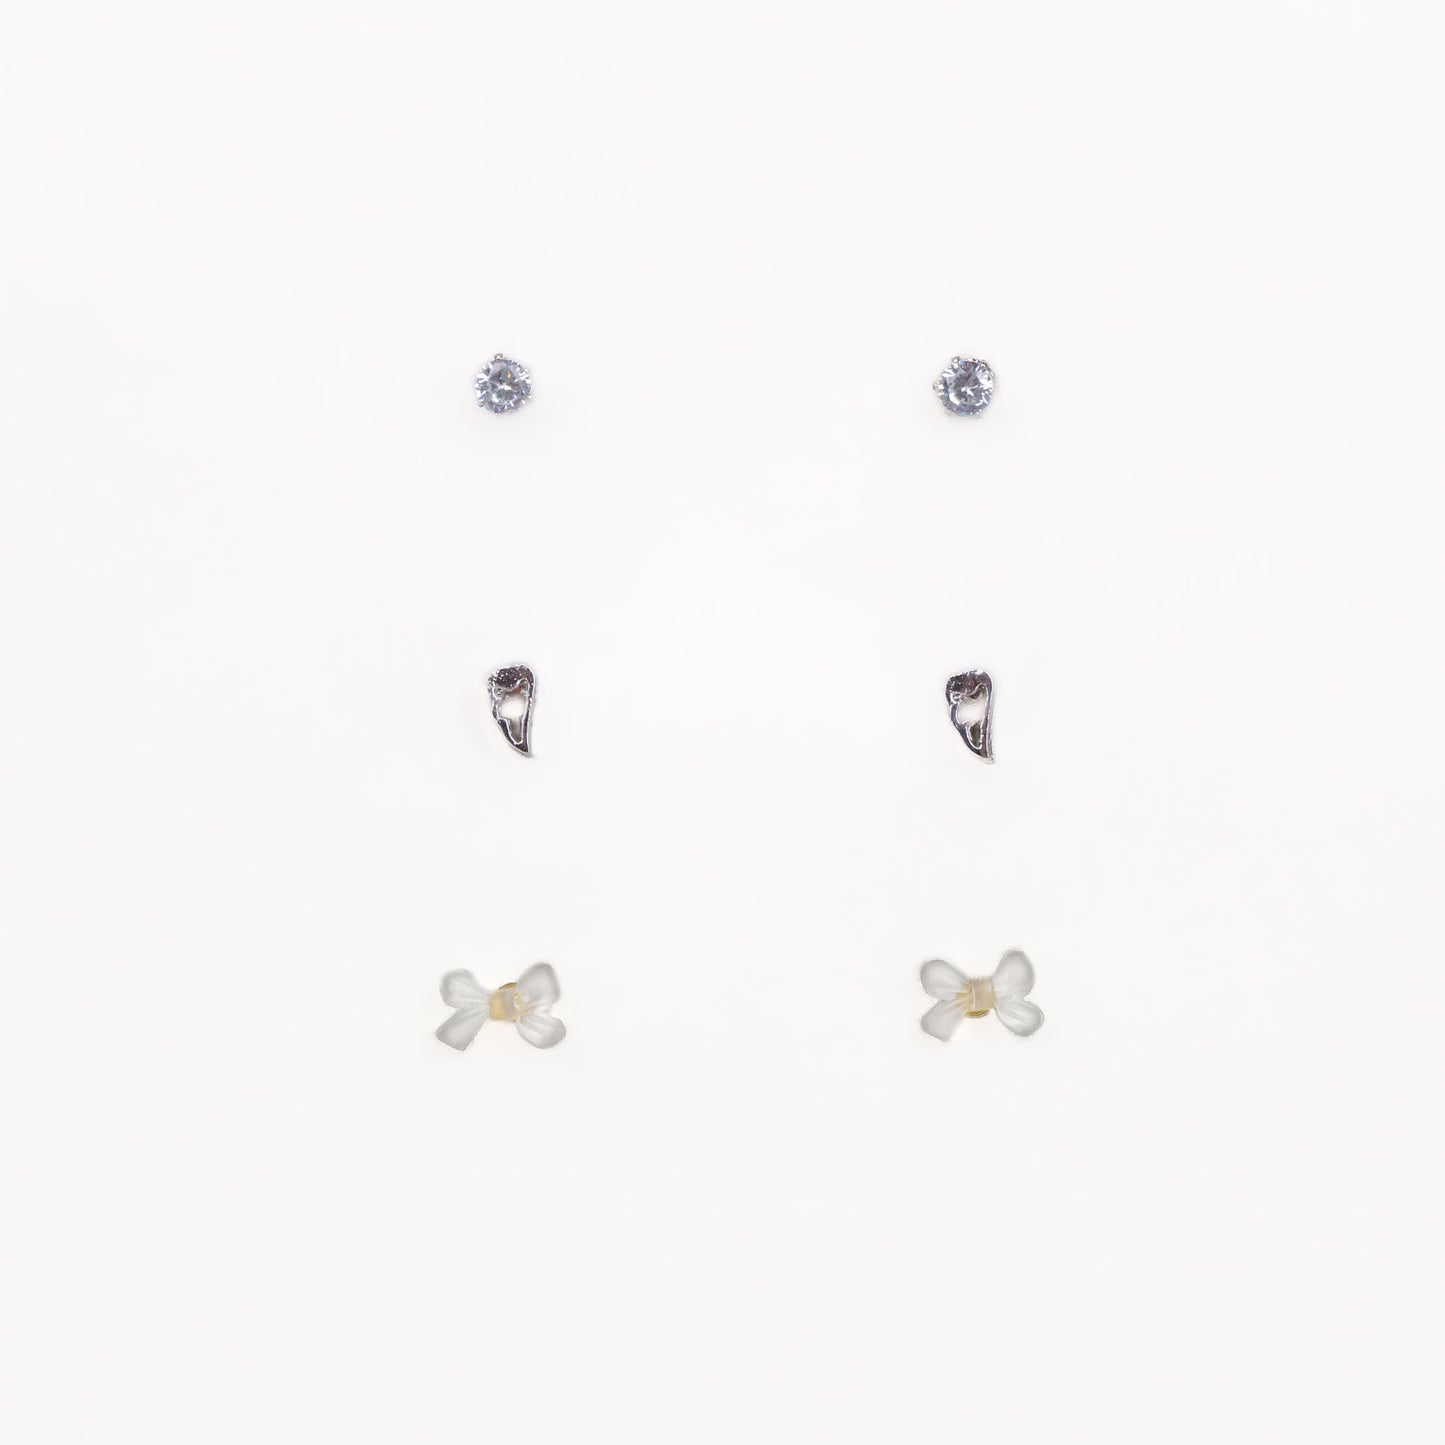 Cercei mici discreți cu fundiță, inimă și piatră, set 3 perechi - Argintiu